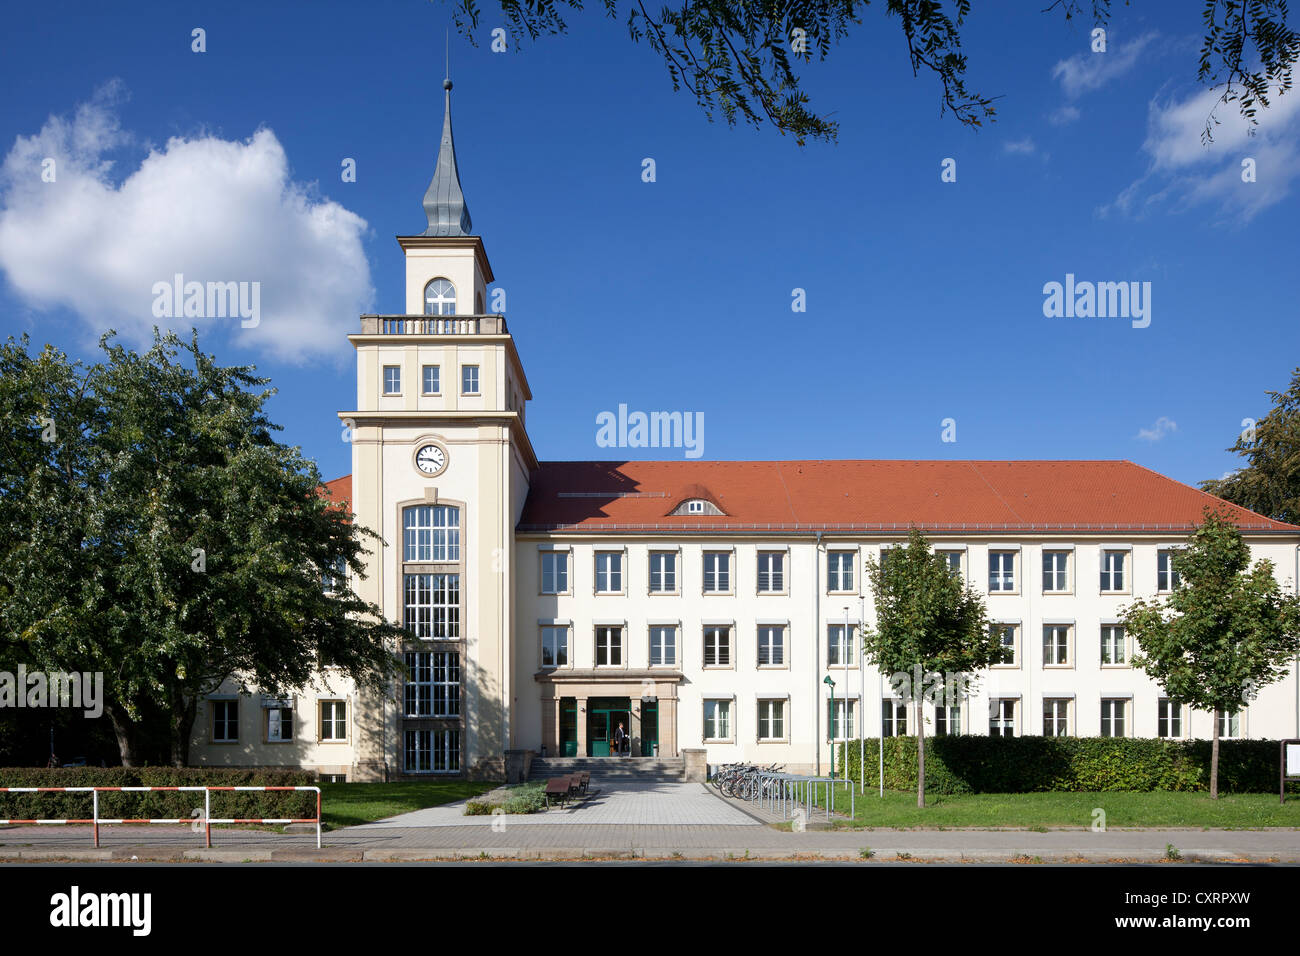 Staatliche Studienakademie, universidad de educación cooperativa, de Bautzen, Budysin, Alta Lusacia, Lusacia, en el Estado federado de Sajonia, PublicGround Foto de stock